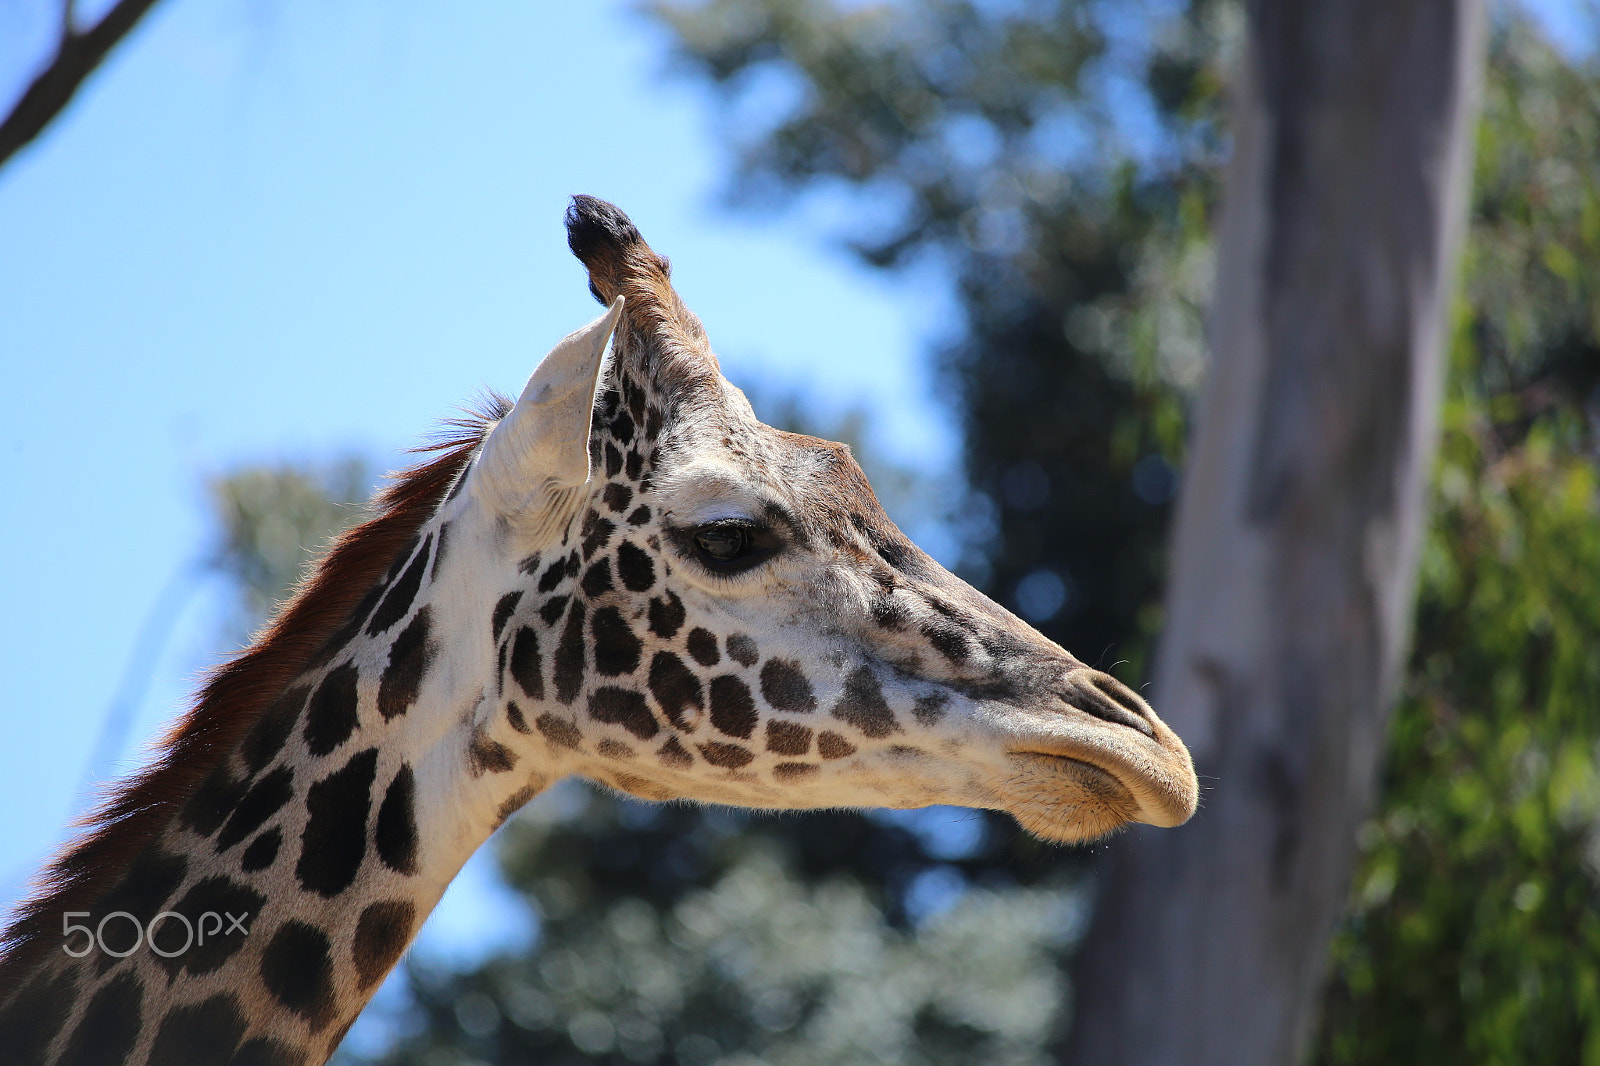 Canon EOS 6D sample photo. Lovely giraffe photography